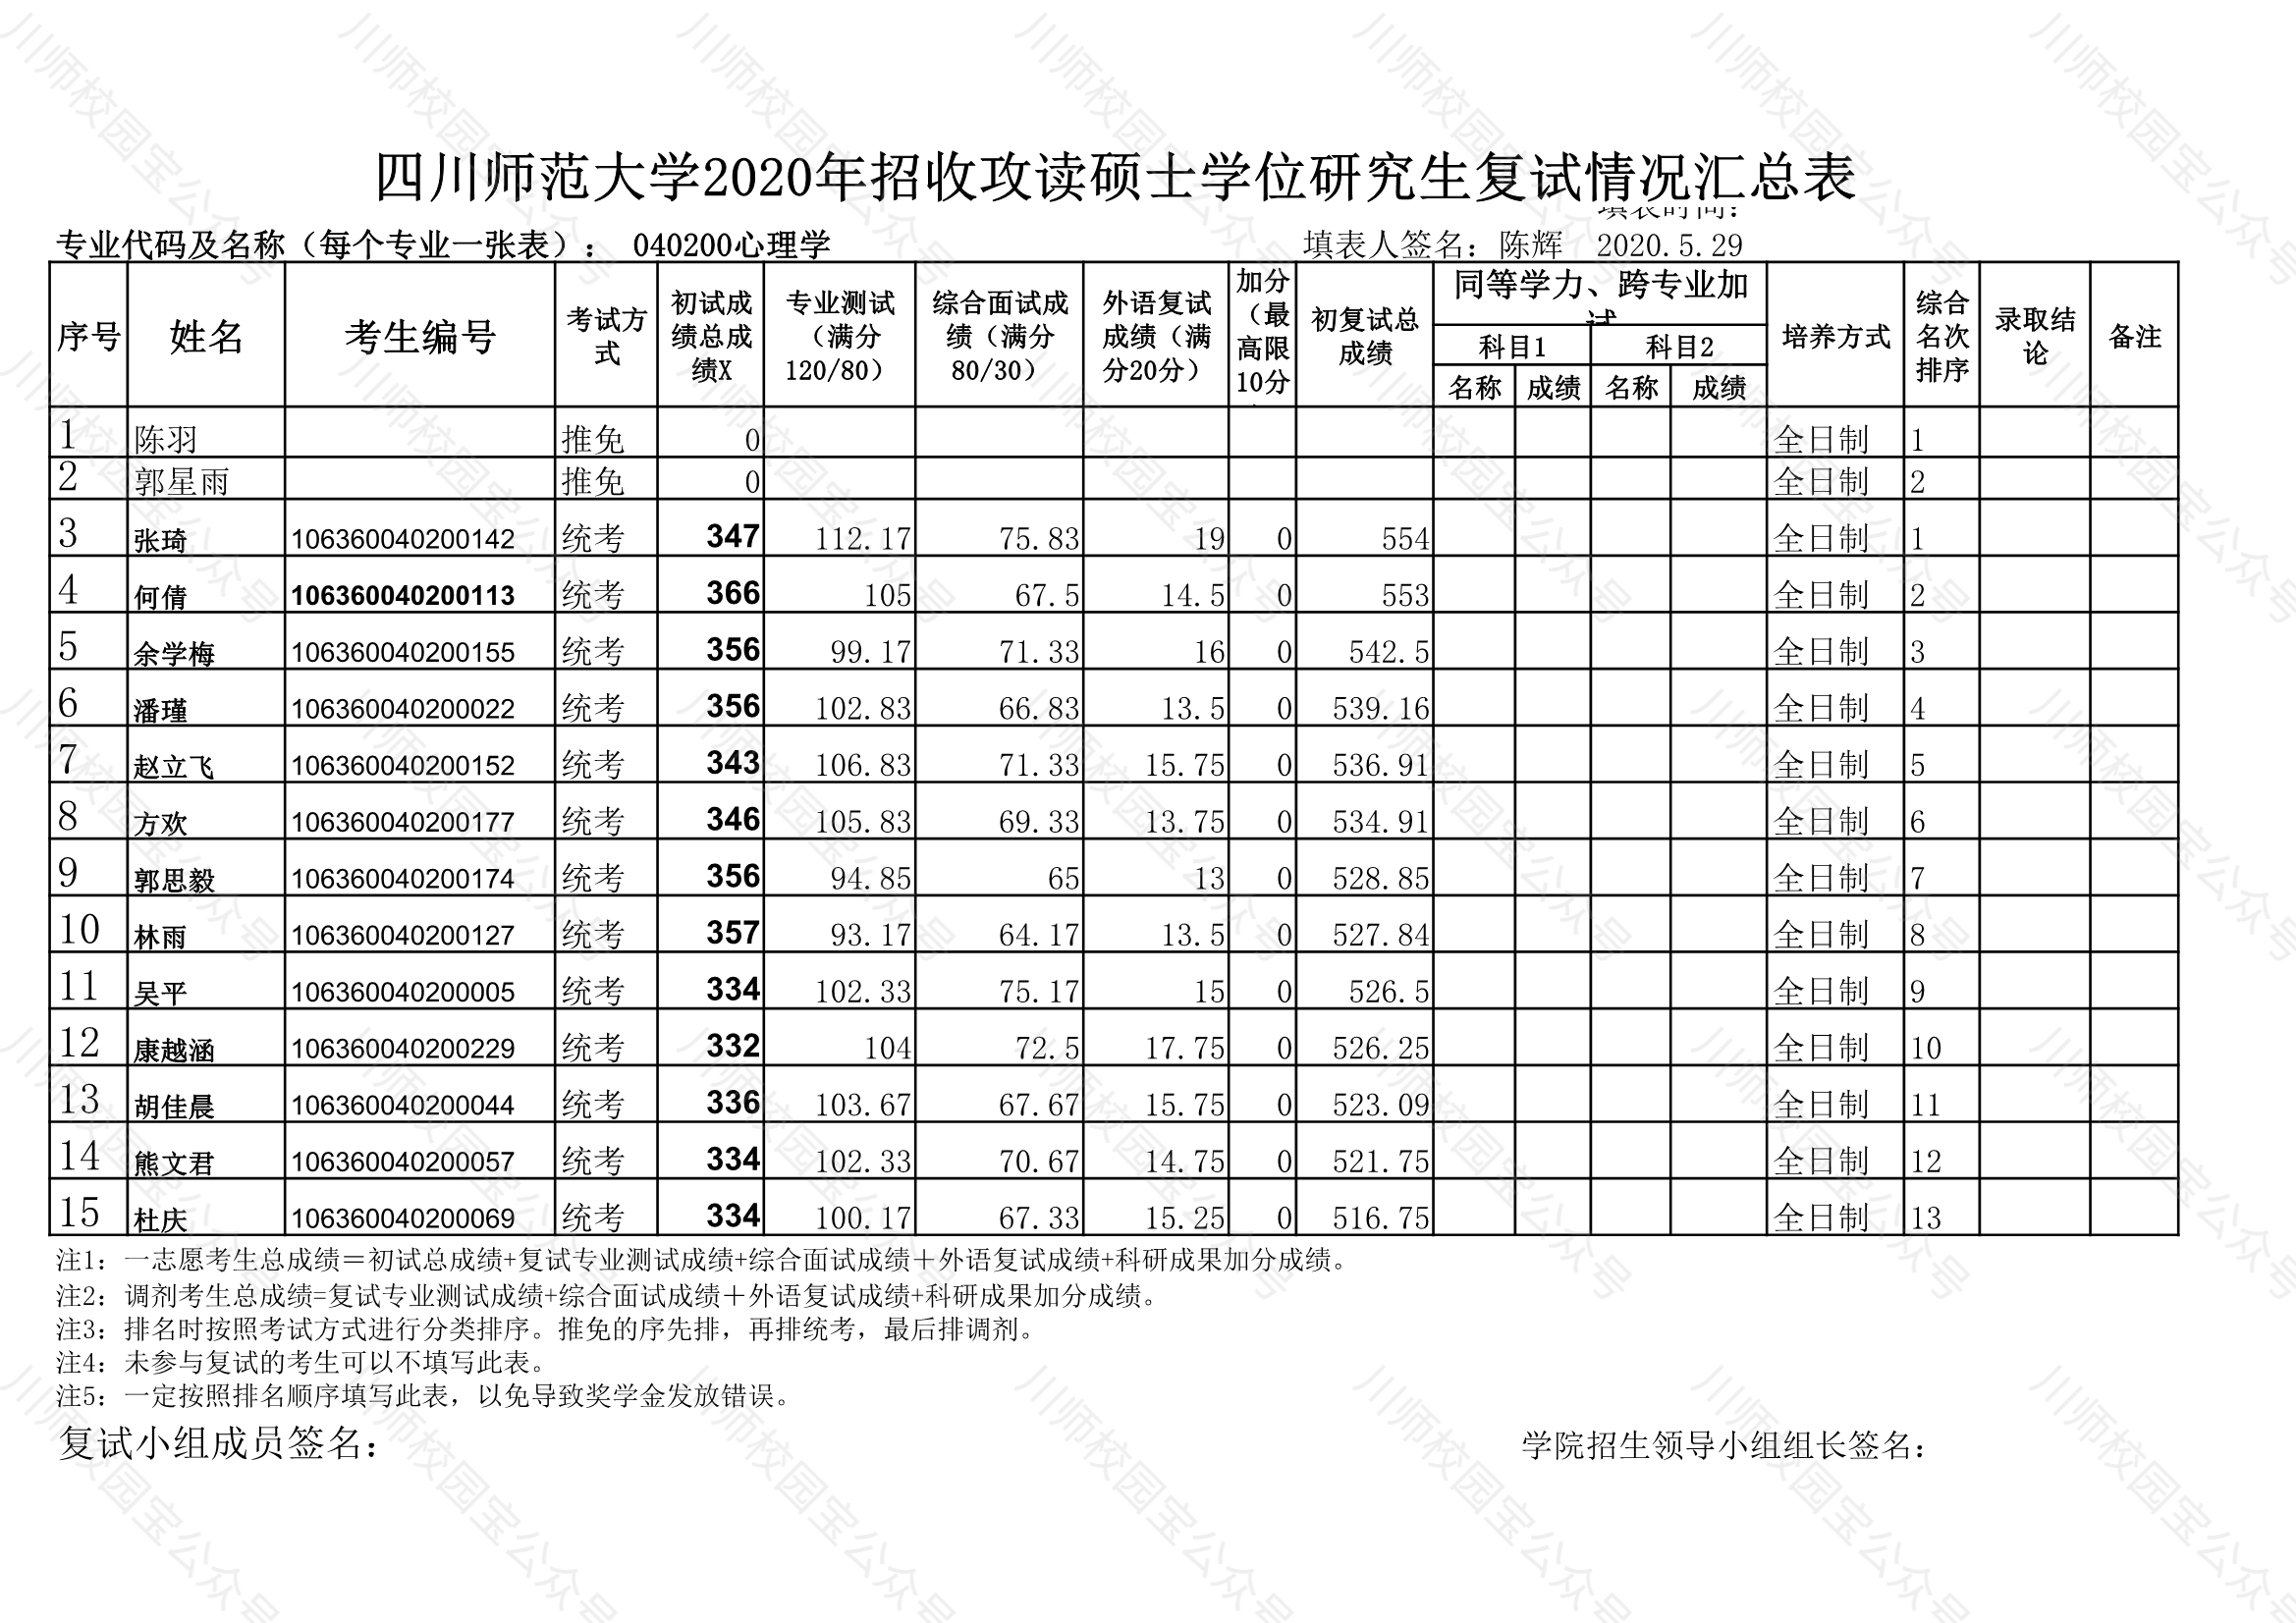 四川师范大学2020年心理学院研究生招生复试成绩公示